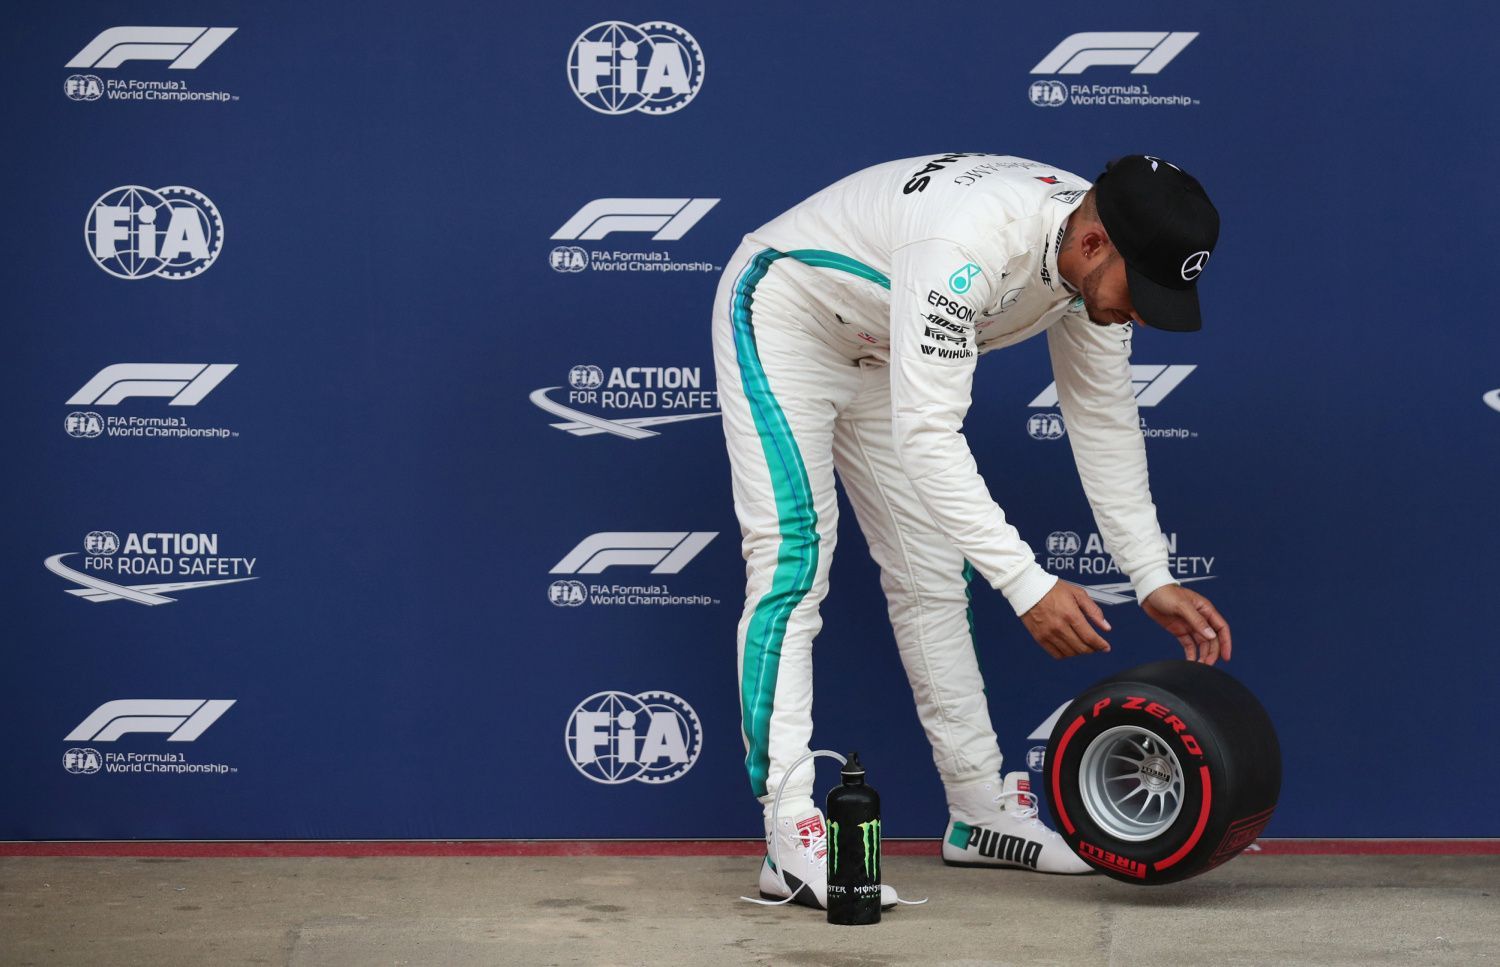 F1, VC Španělska 2018: Lewis Hamilton, Mercedes